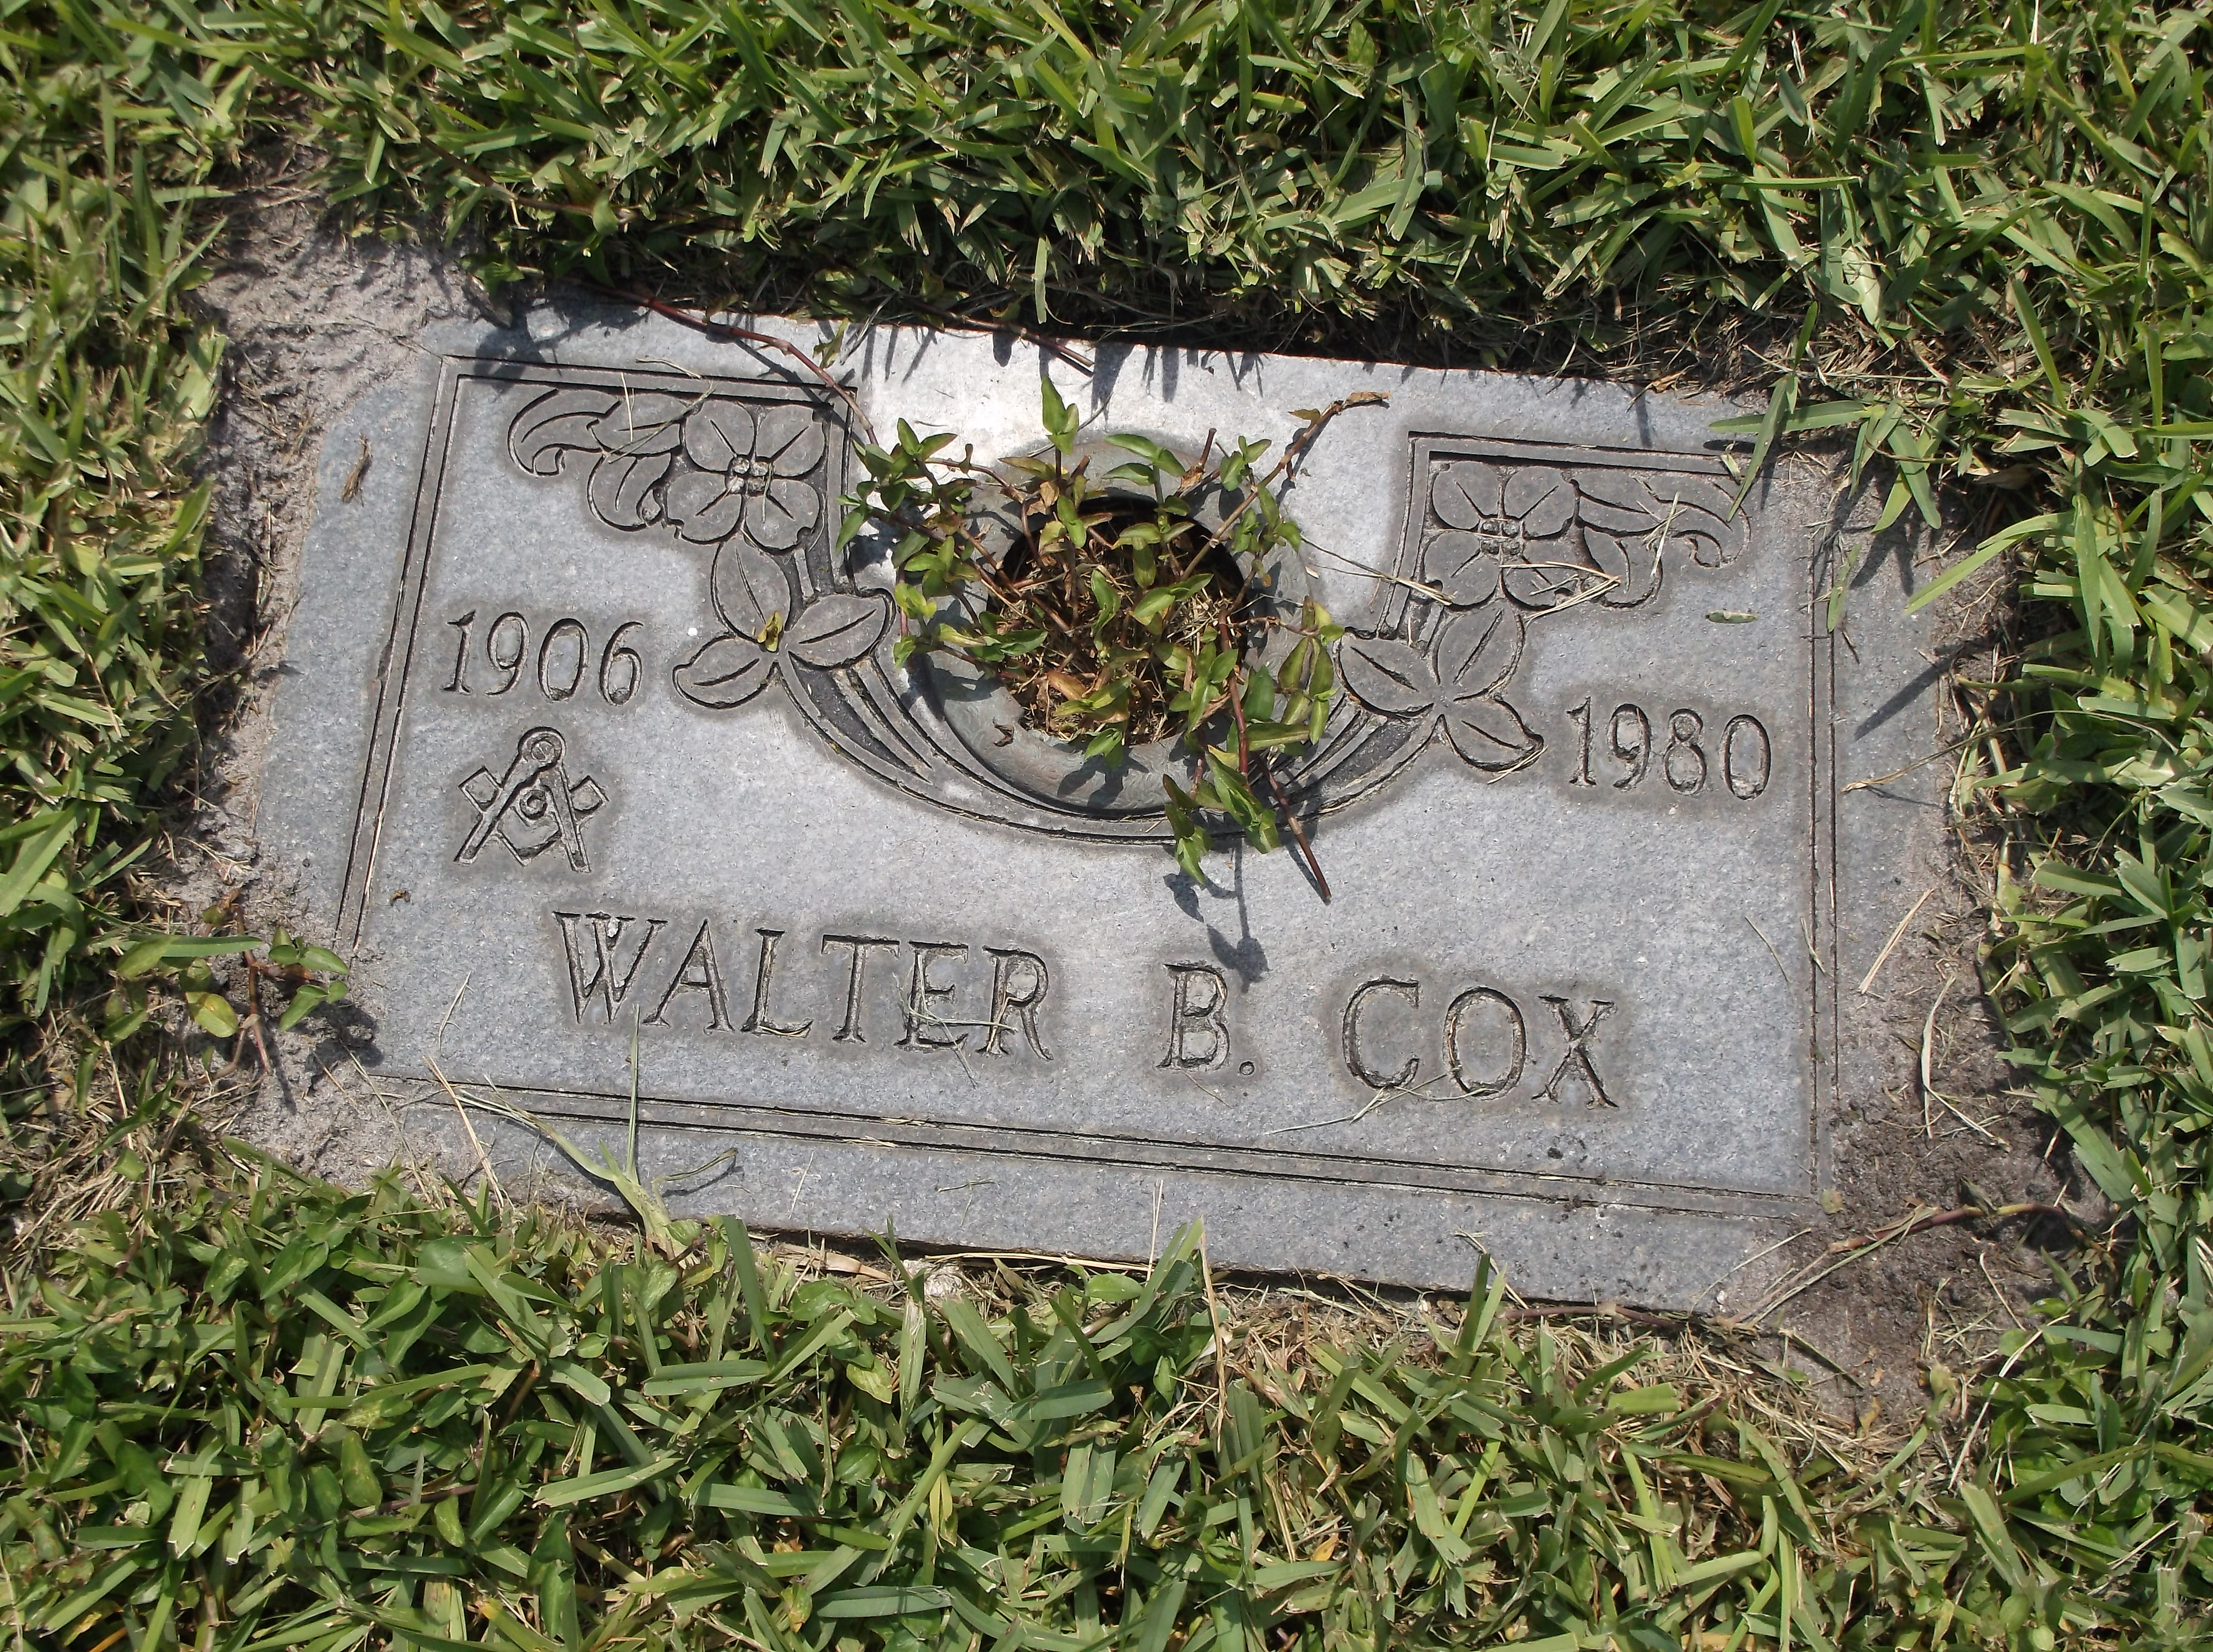 Walter B Cox